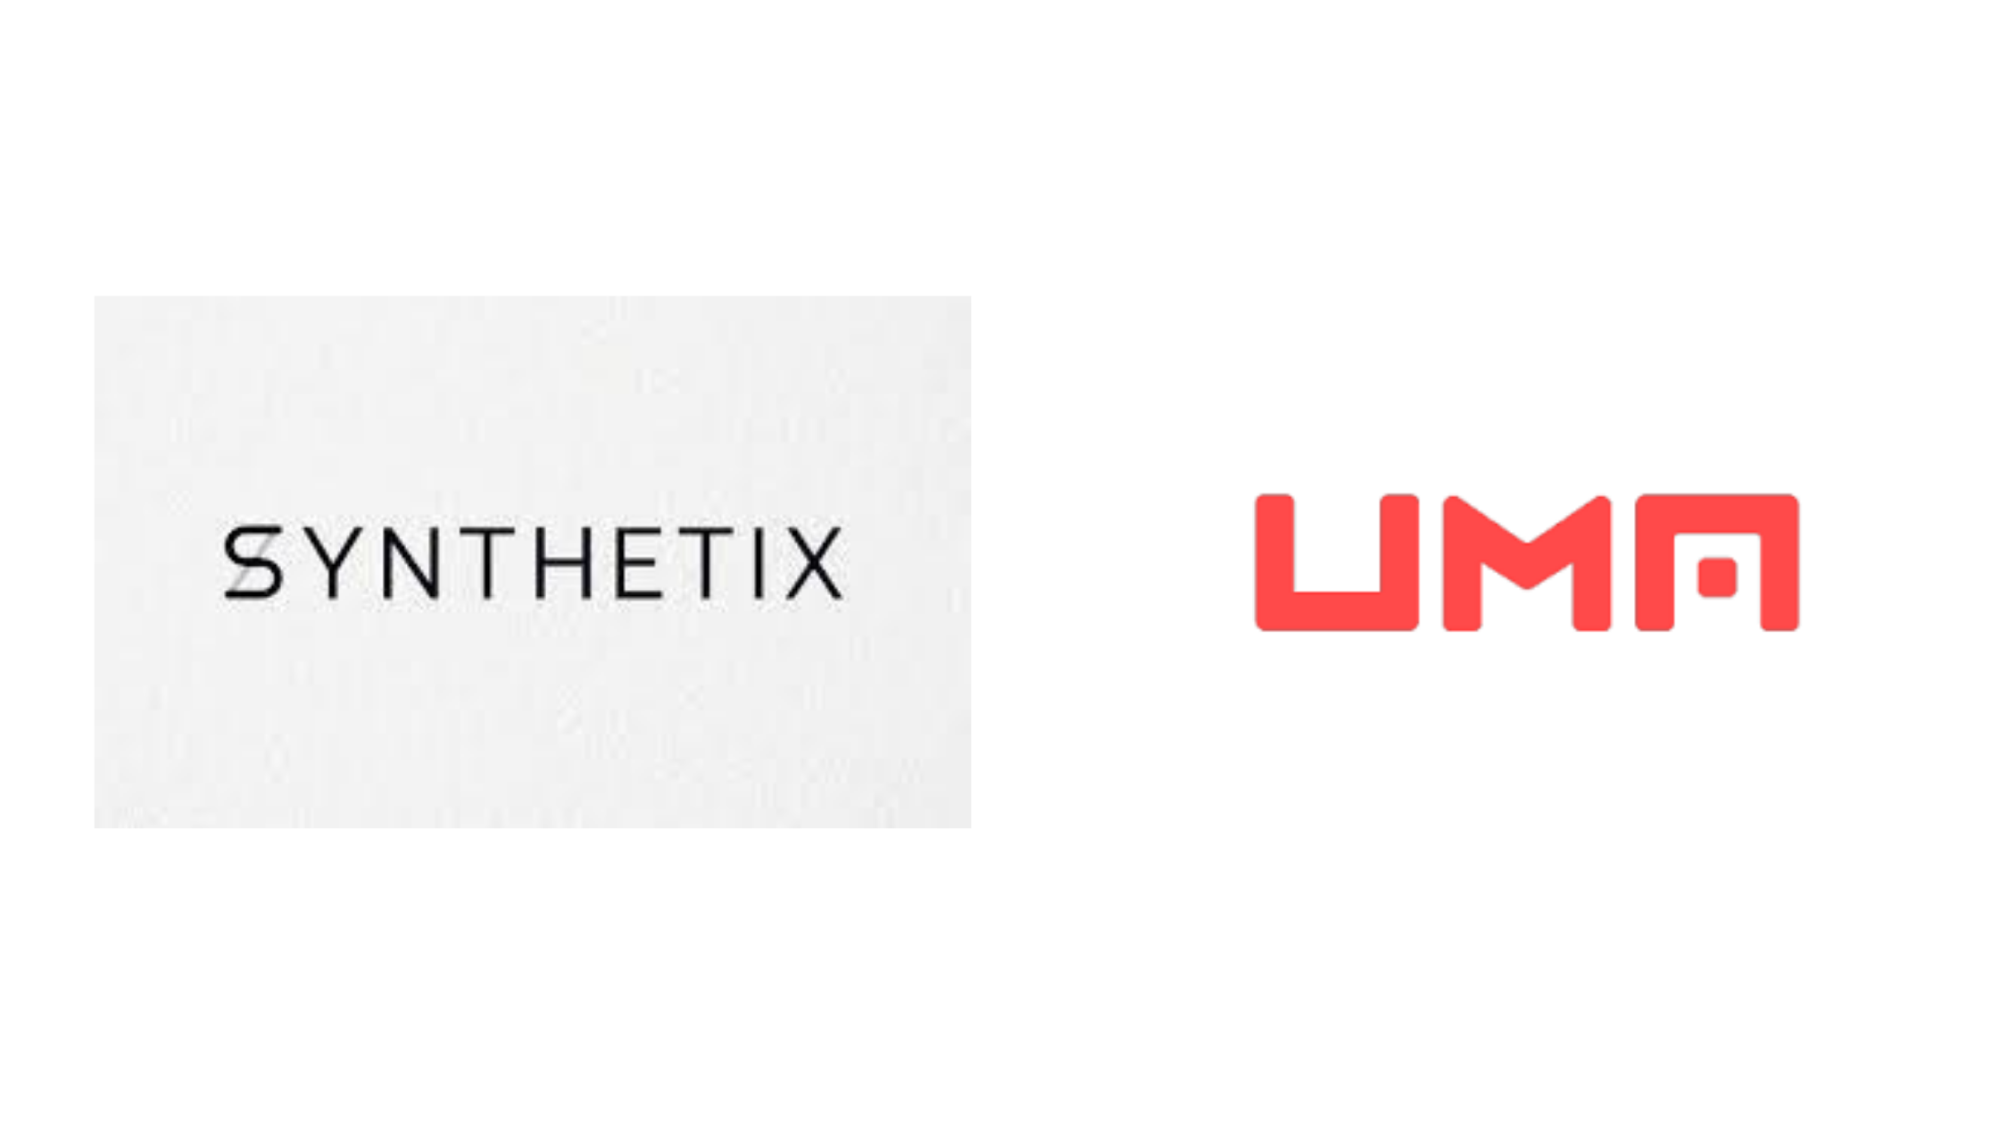 Synthetix and UMA logos